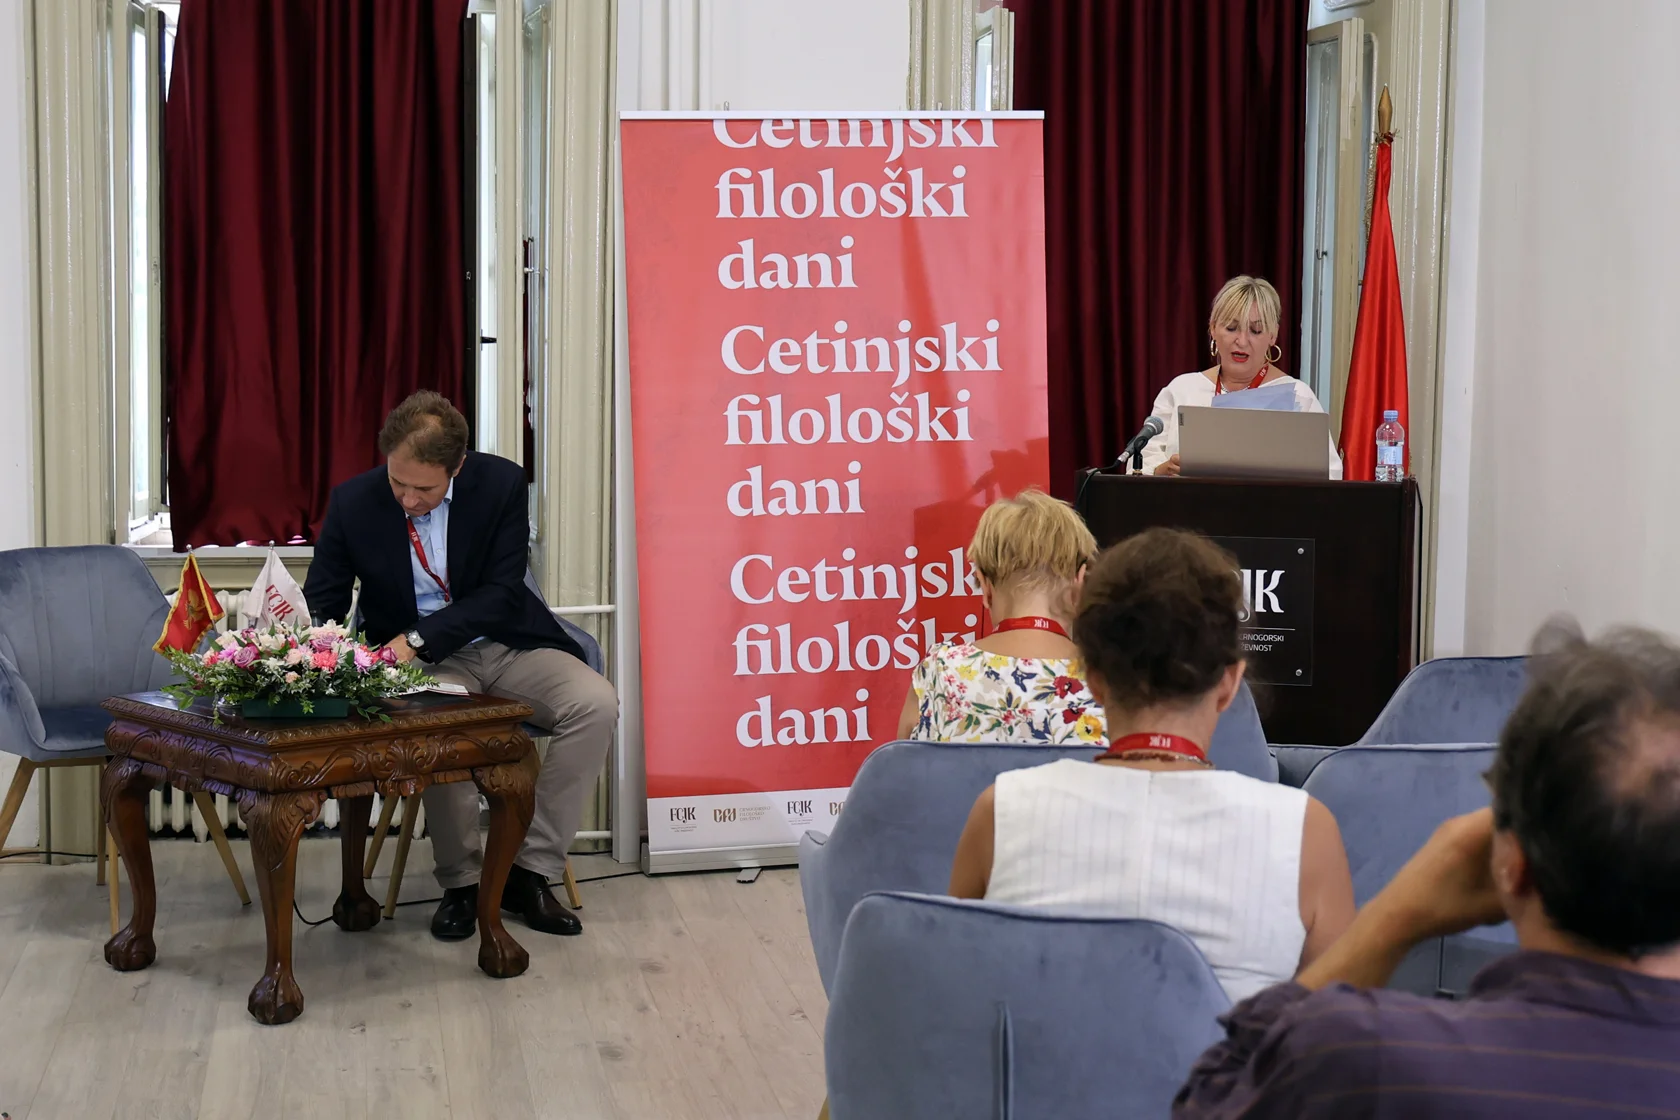 Završeni Cetinjski filološki dani: "FCJK preuzeo zadatak savjesti crnogorskog društva"